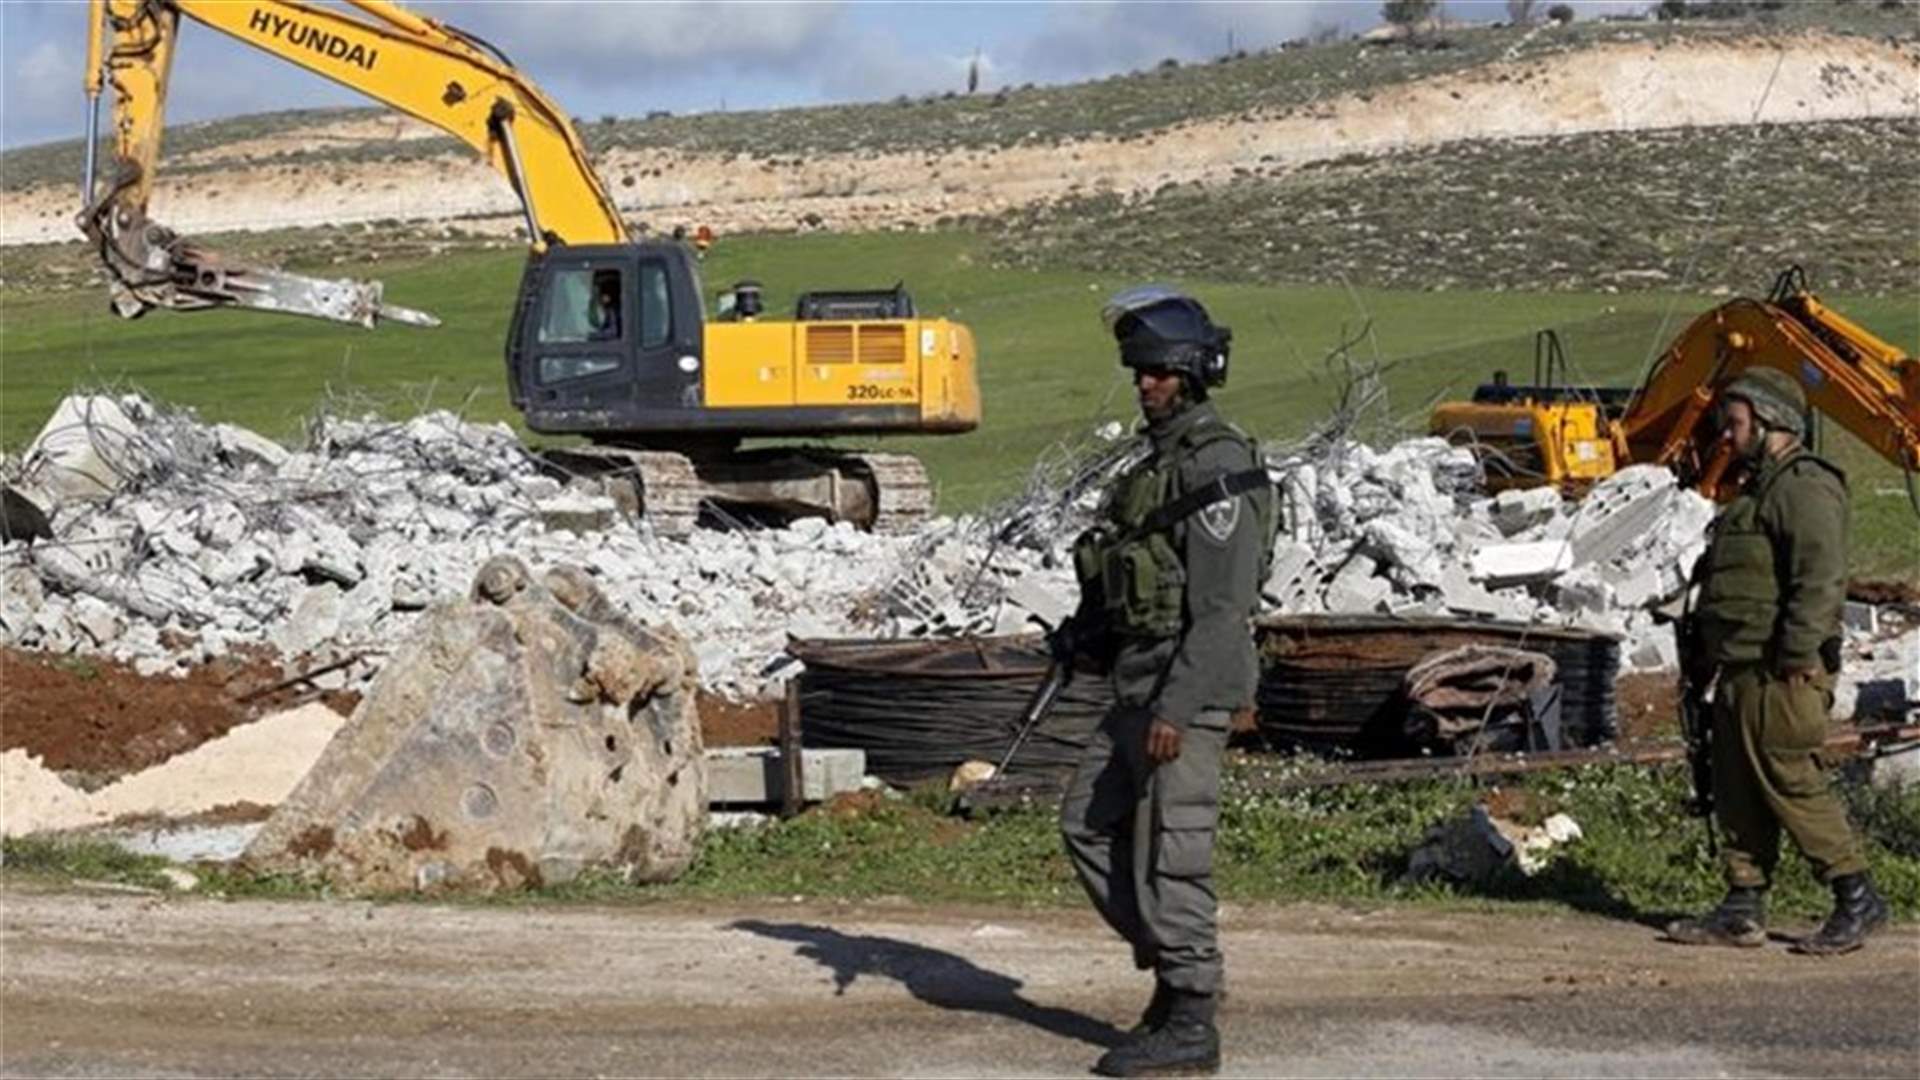 Palestinian stabs 2 Israeli soldiers in West Bank